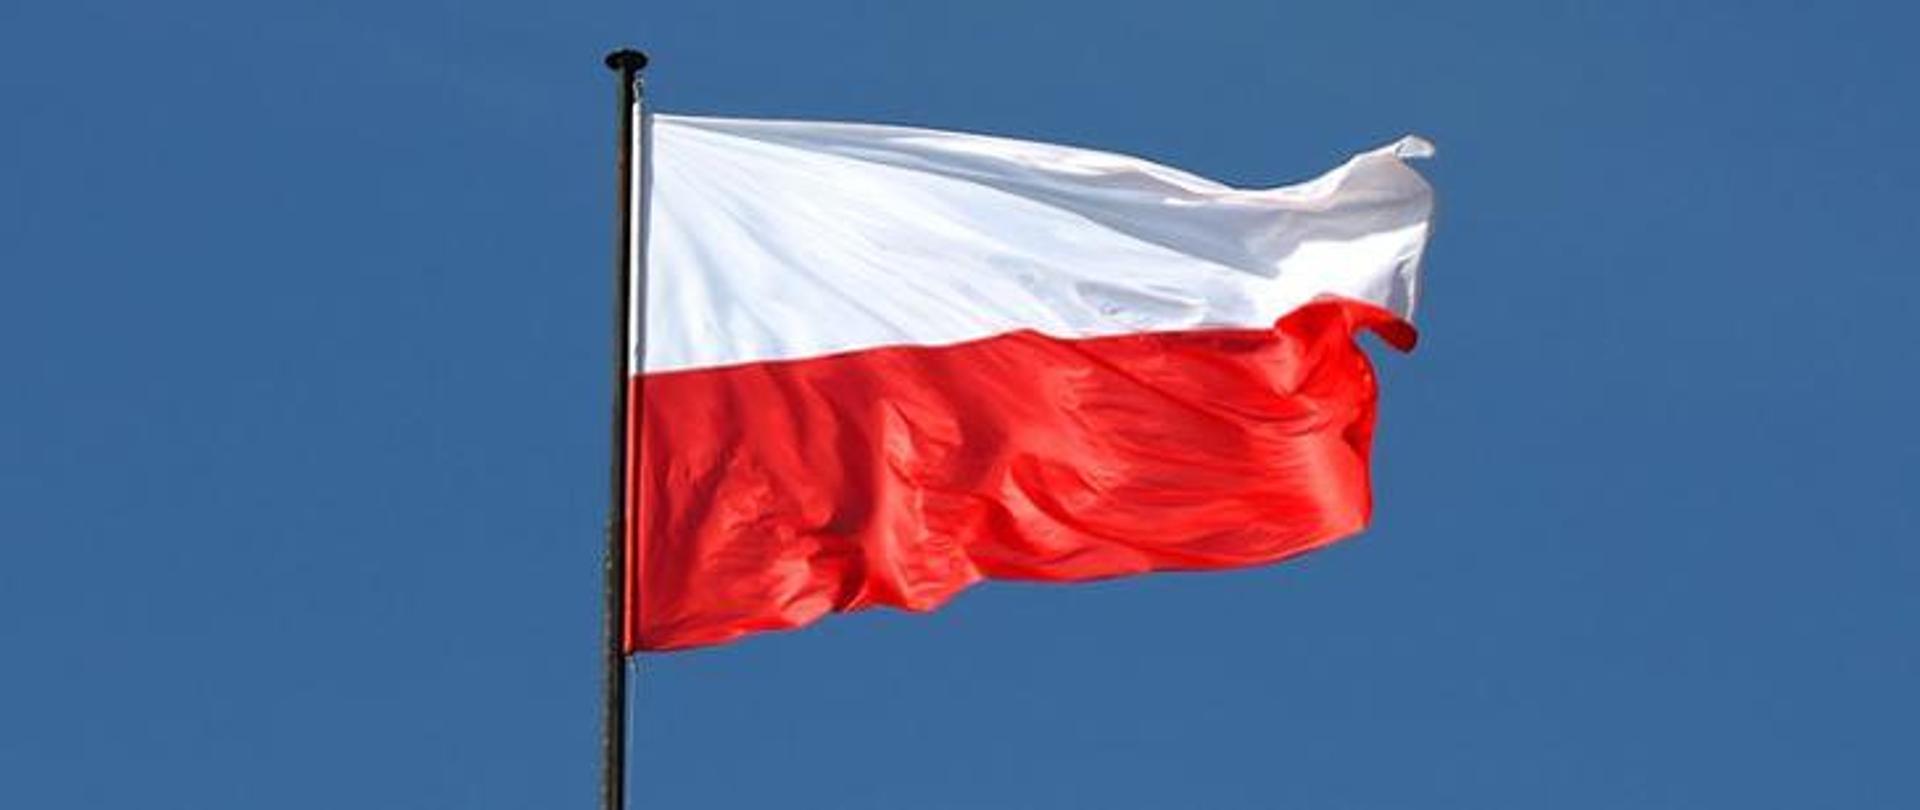 Zdjęcie przedstawia flagę Polski na błękitnym tle.